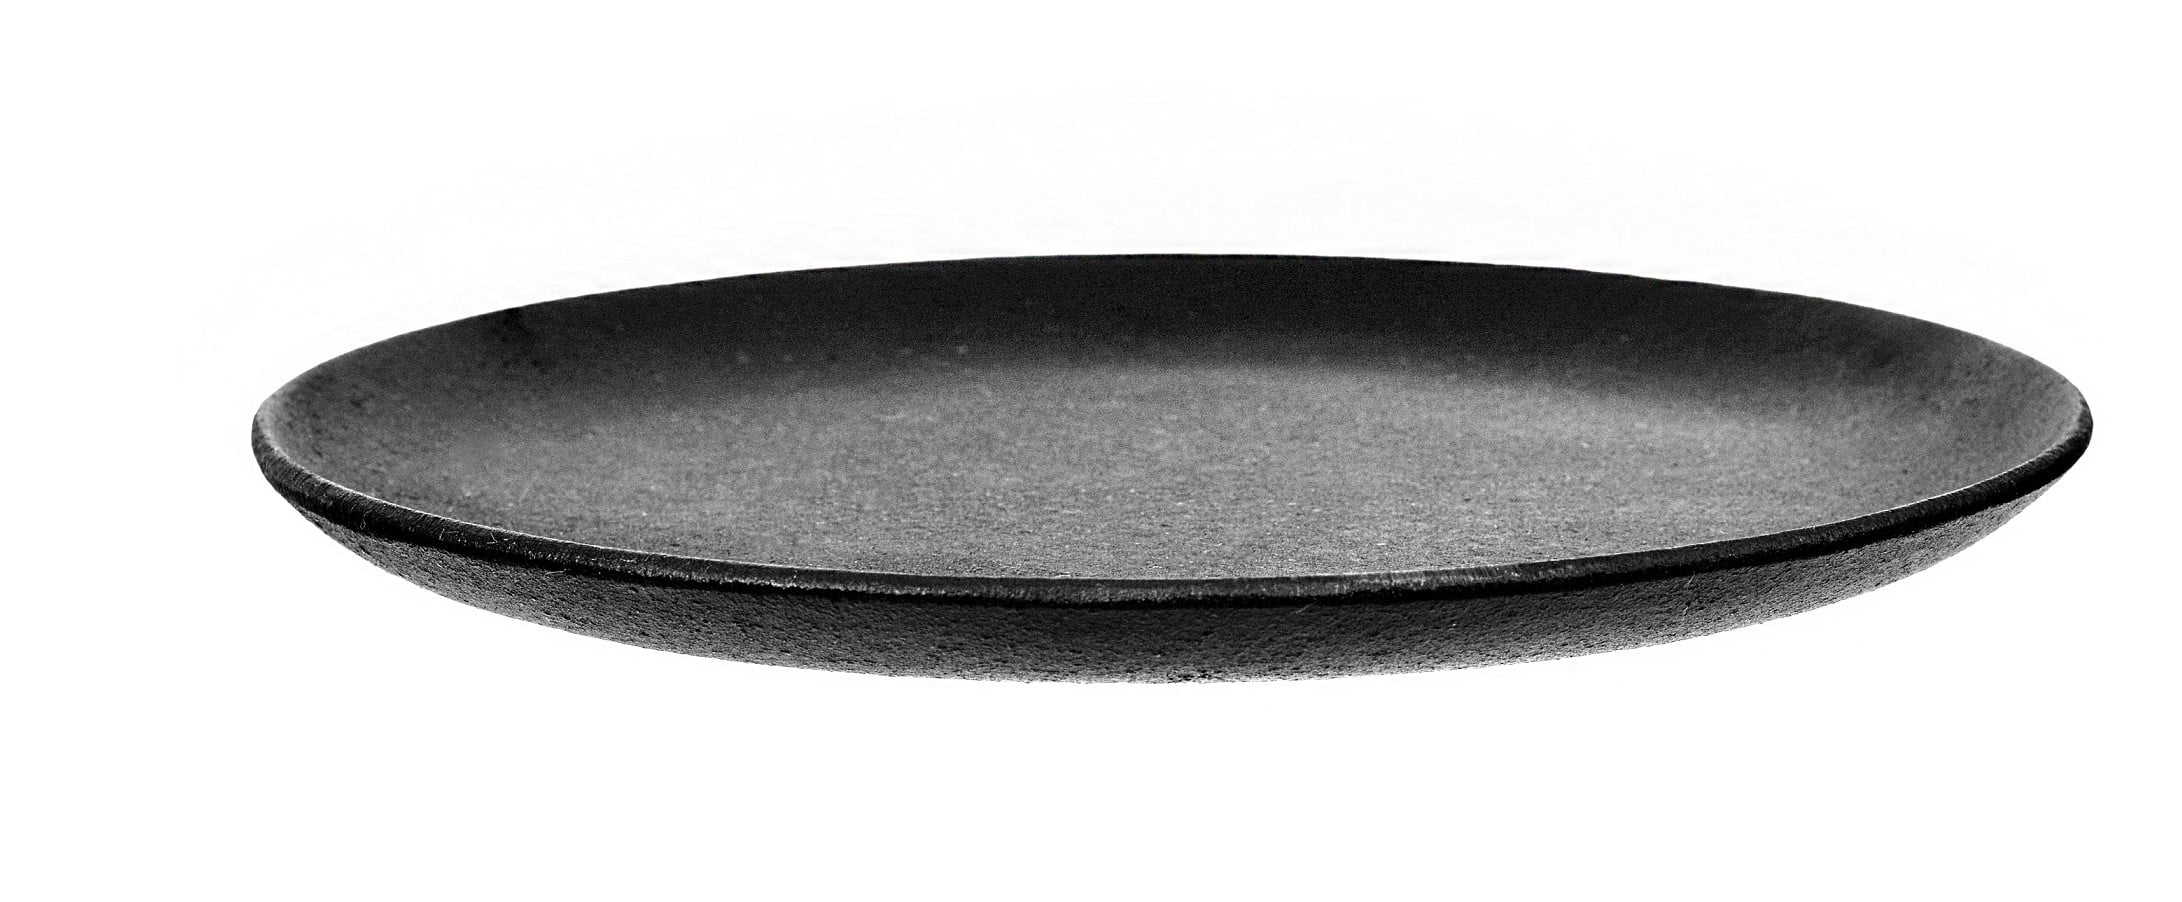 chapa ferro fundido, prato, 24 cm,, bifeteira, bifeira, panela mineira